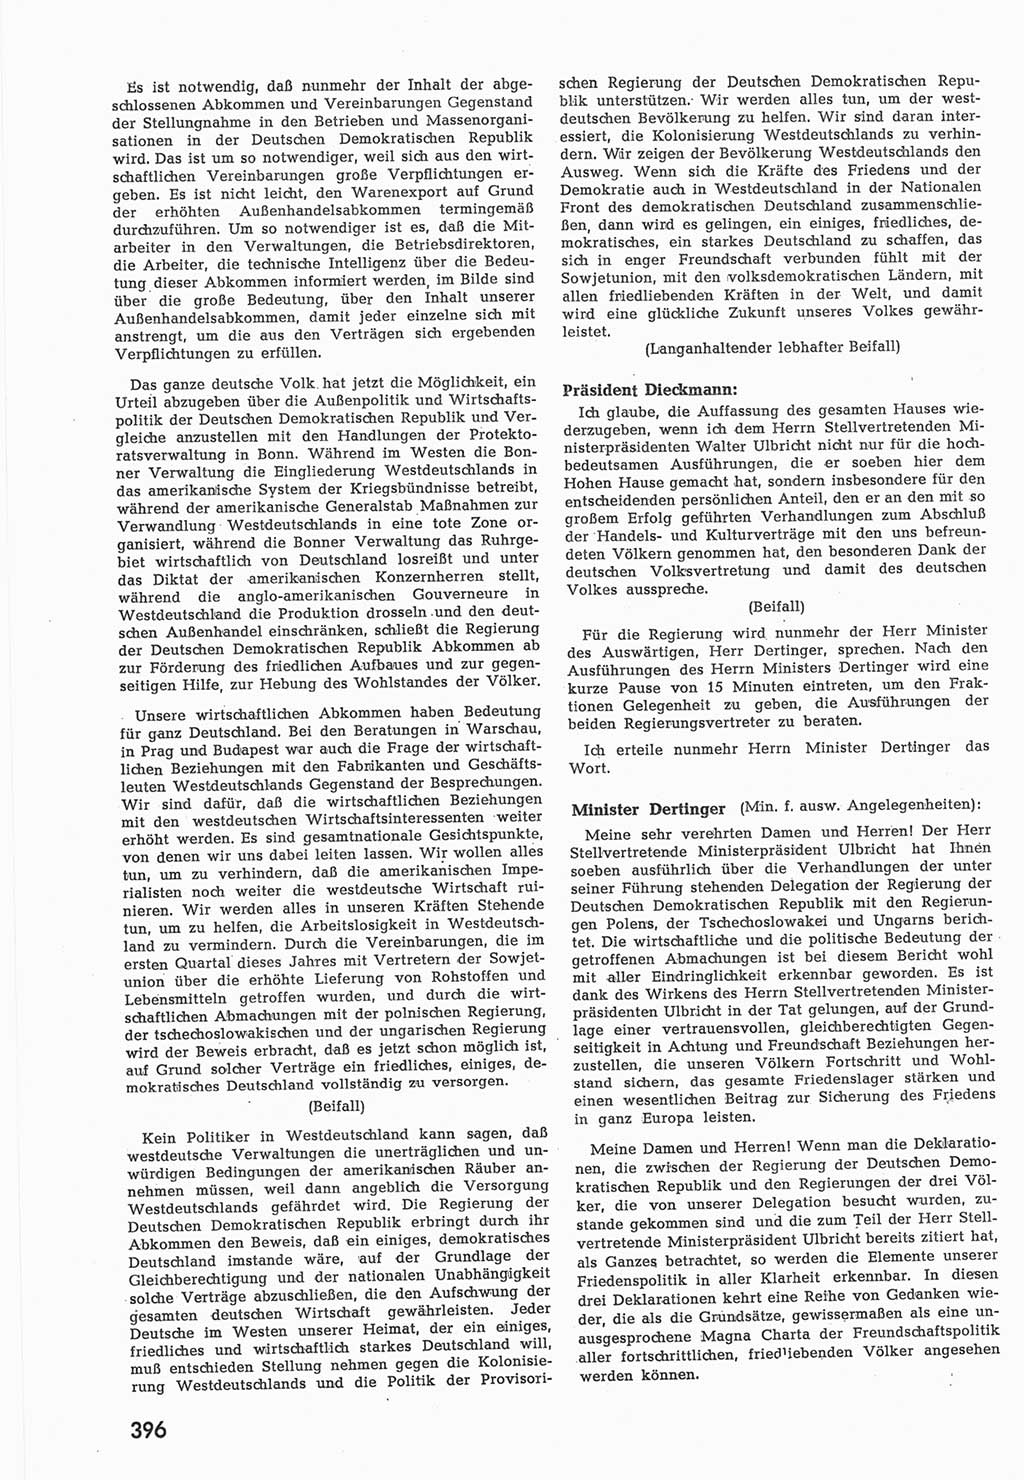 Provisorische Volkskammer (VK) der Deutschen Demokratischen Republik (DDR) 1949-1950, Dokument 414 (Prov. VK DDR 1949-1950, Dok. 414)